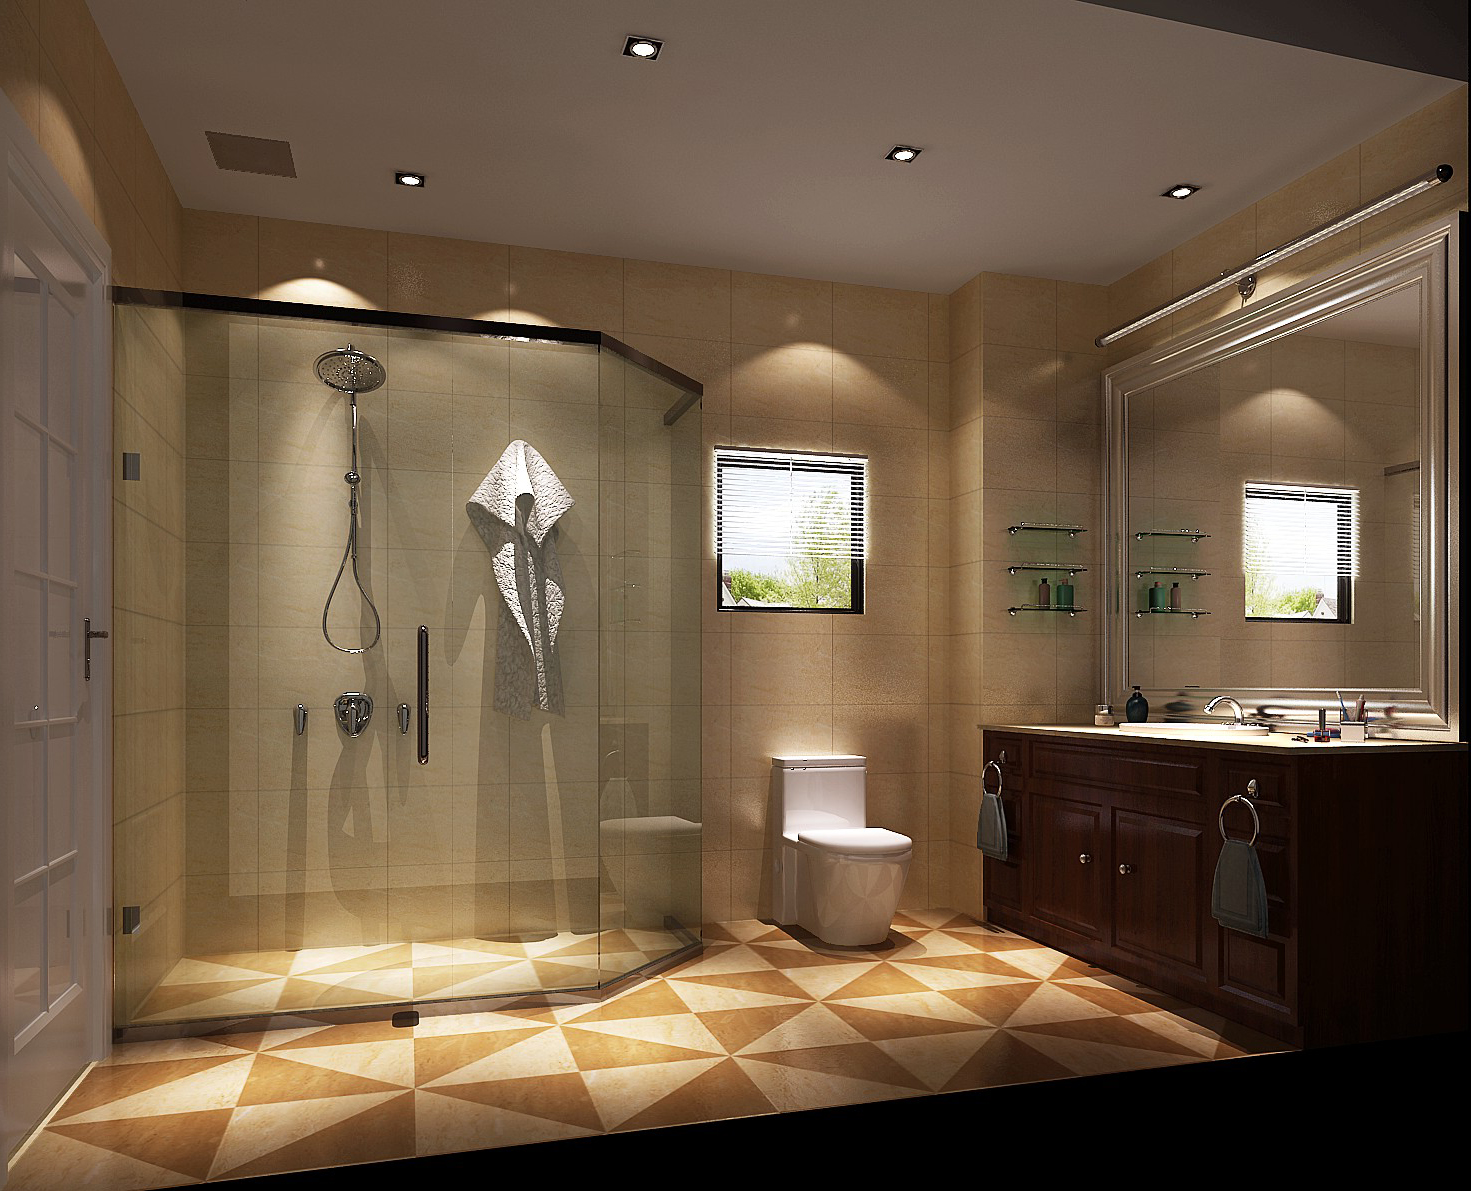 潮白河孔雀 欧式 简约 别墅 高度国际 卫生间图片来自凌军在简约欧式别墅的分享